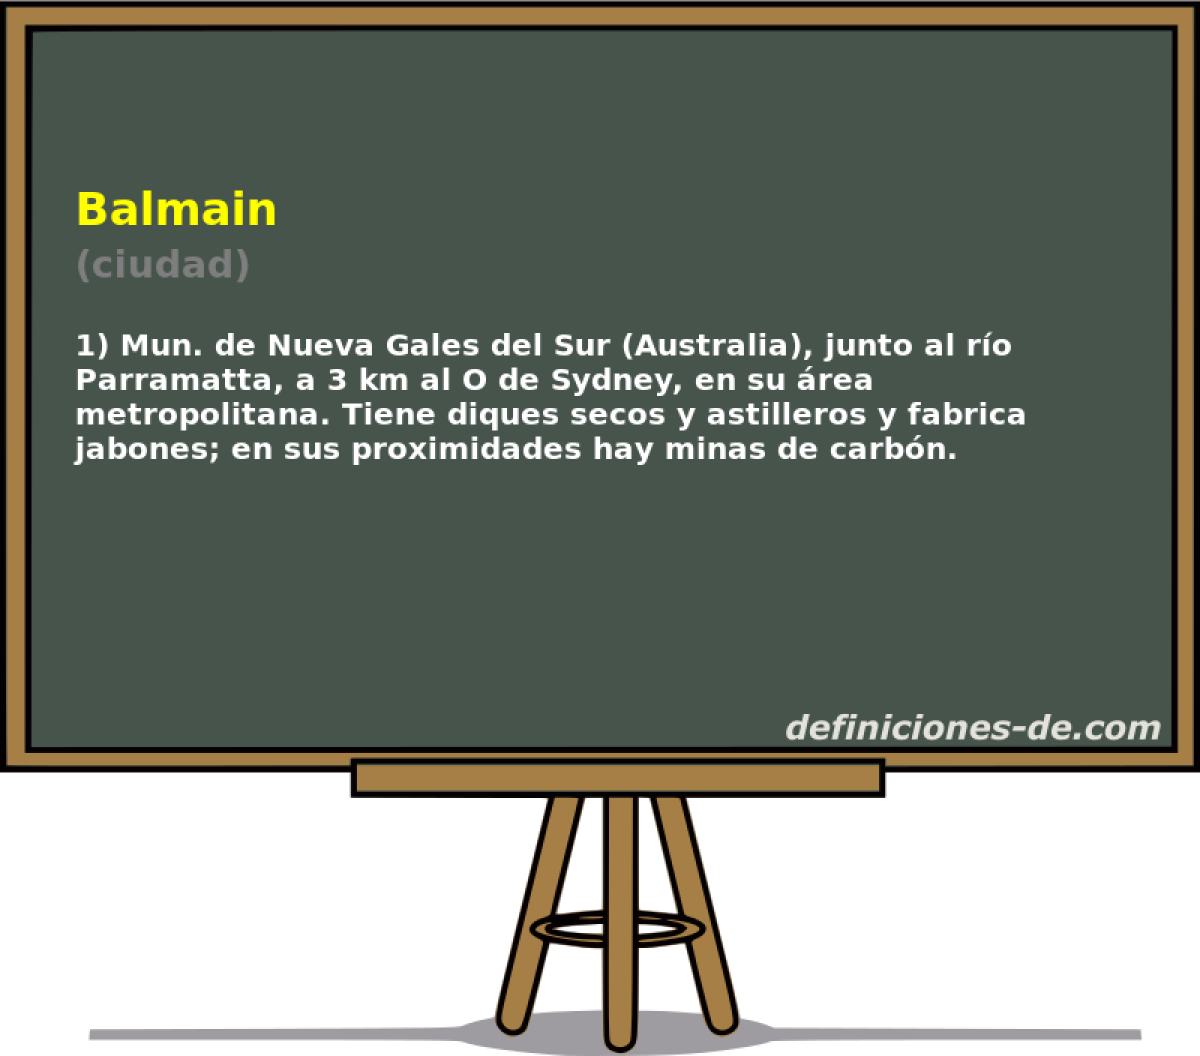 Balmain (ciudad)